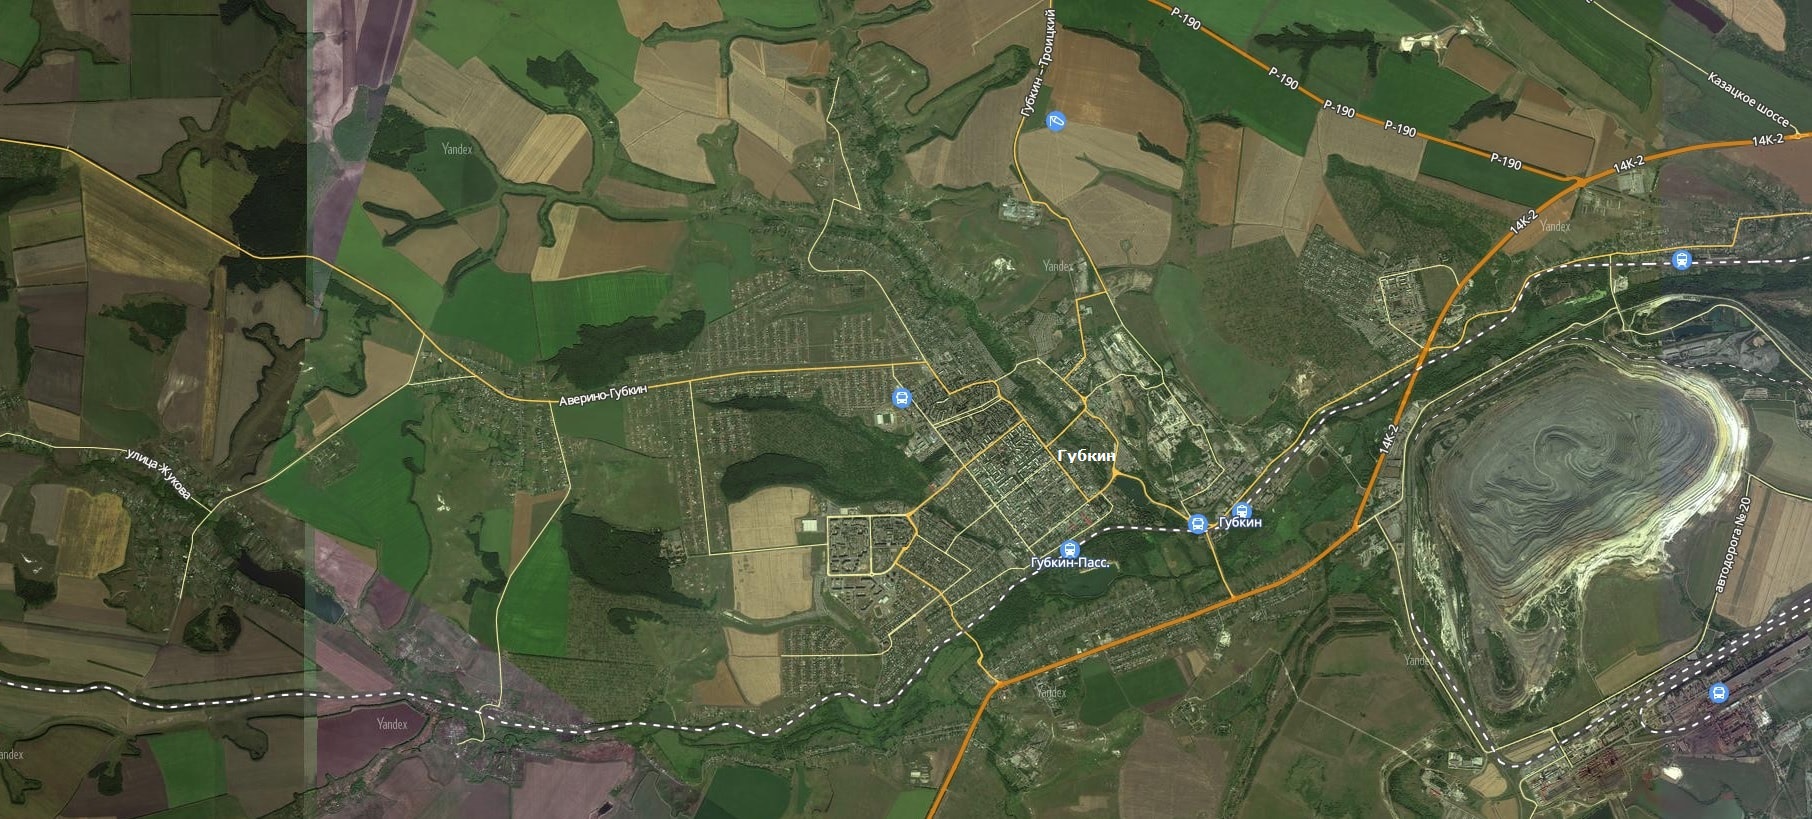 Карта ярцево смоленской области с улицами и домами со спутника в реальном времени